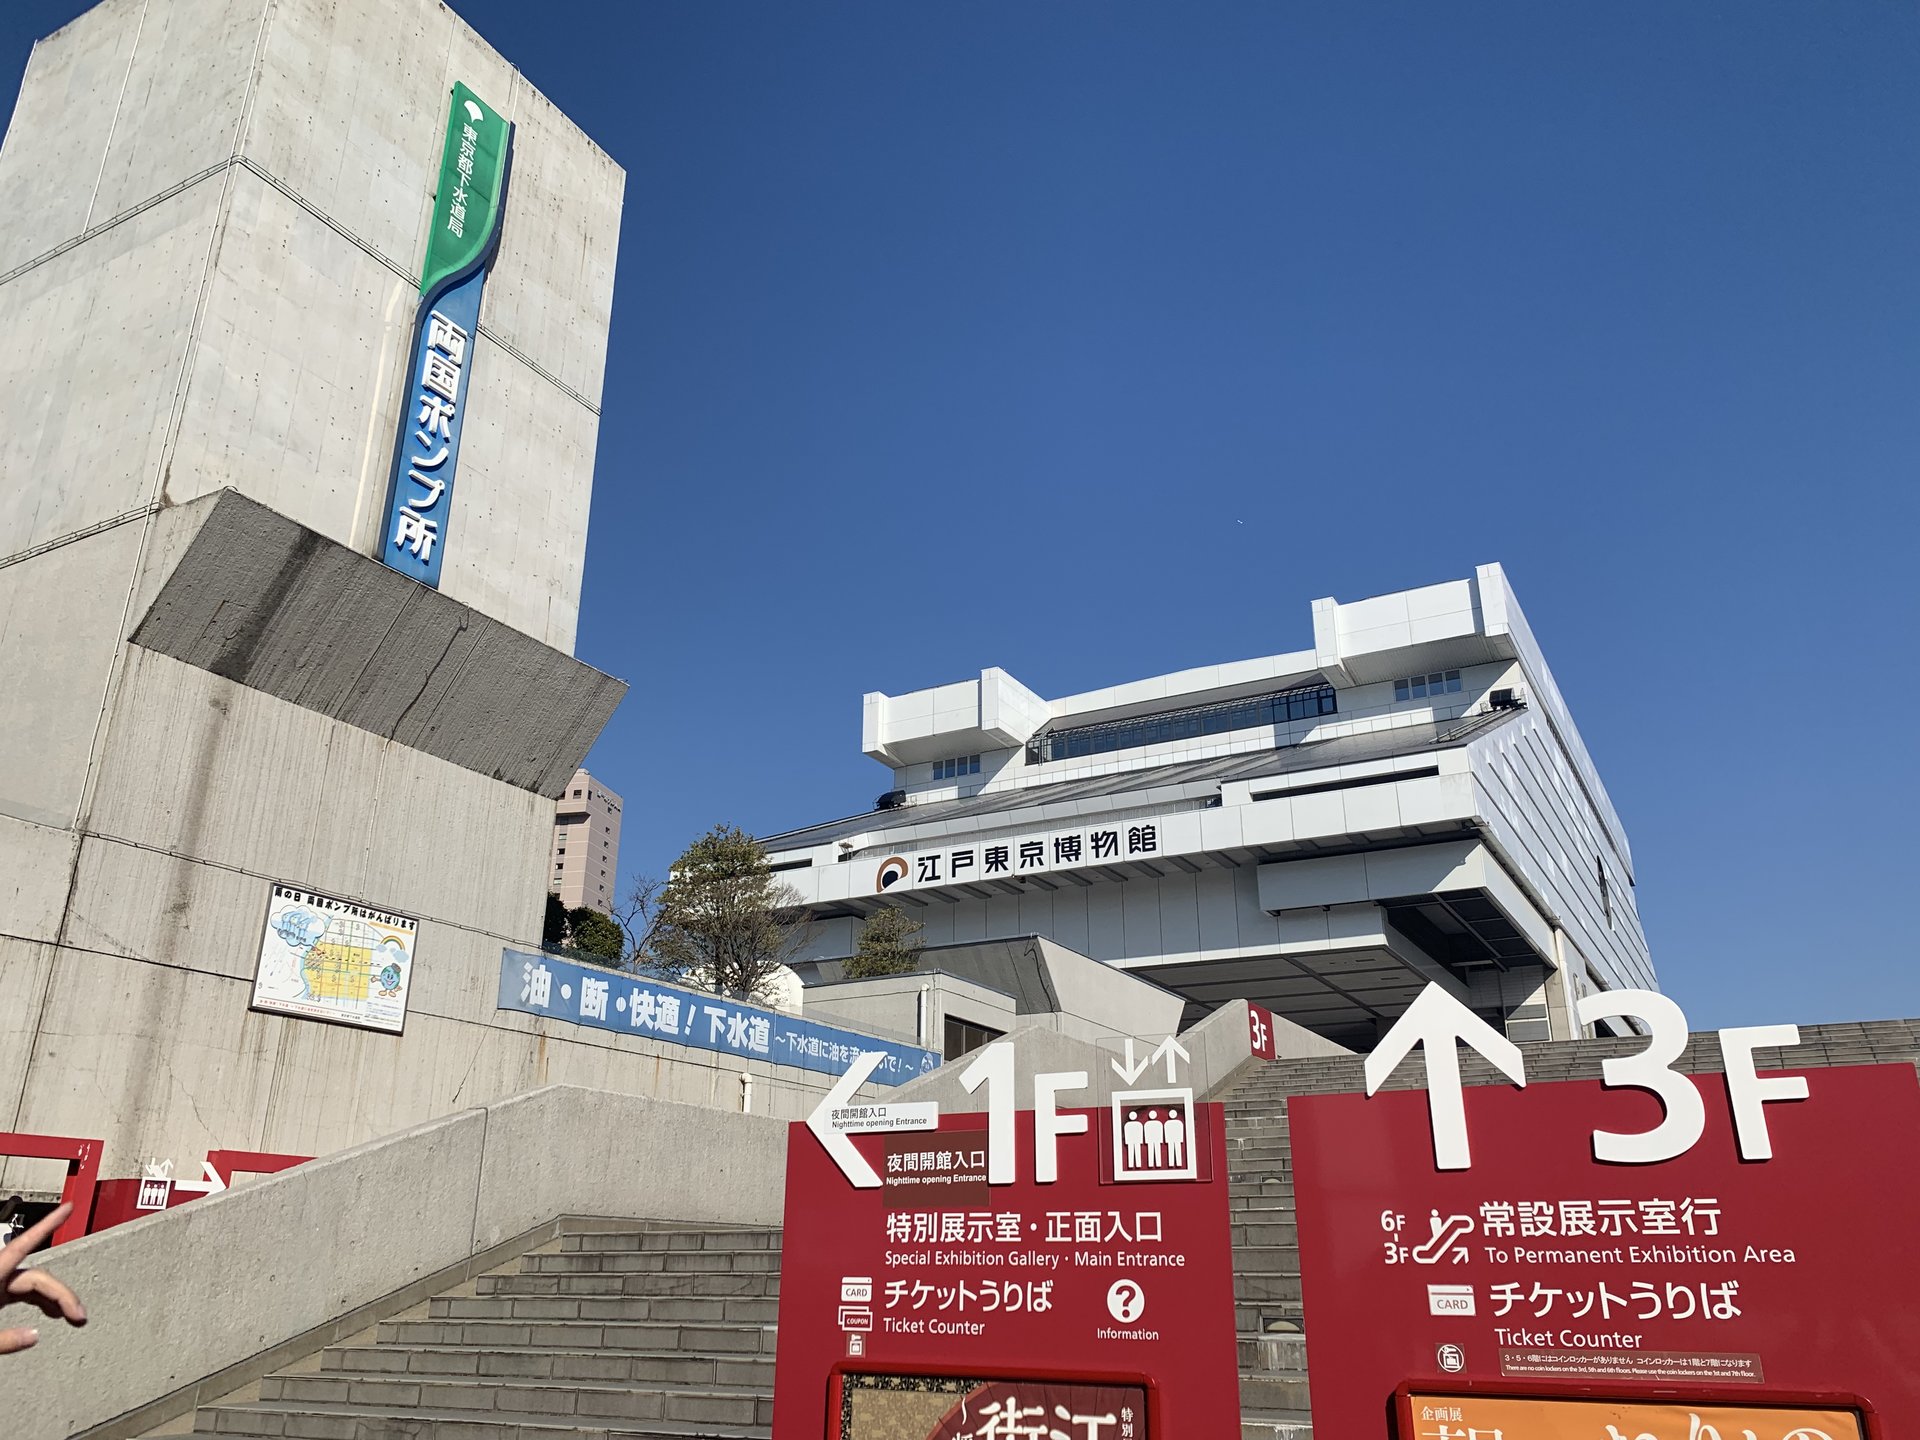 両国で歴史と文化を学べる江戸東京博物館を満喫しよう！